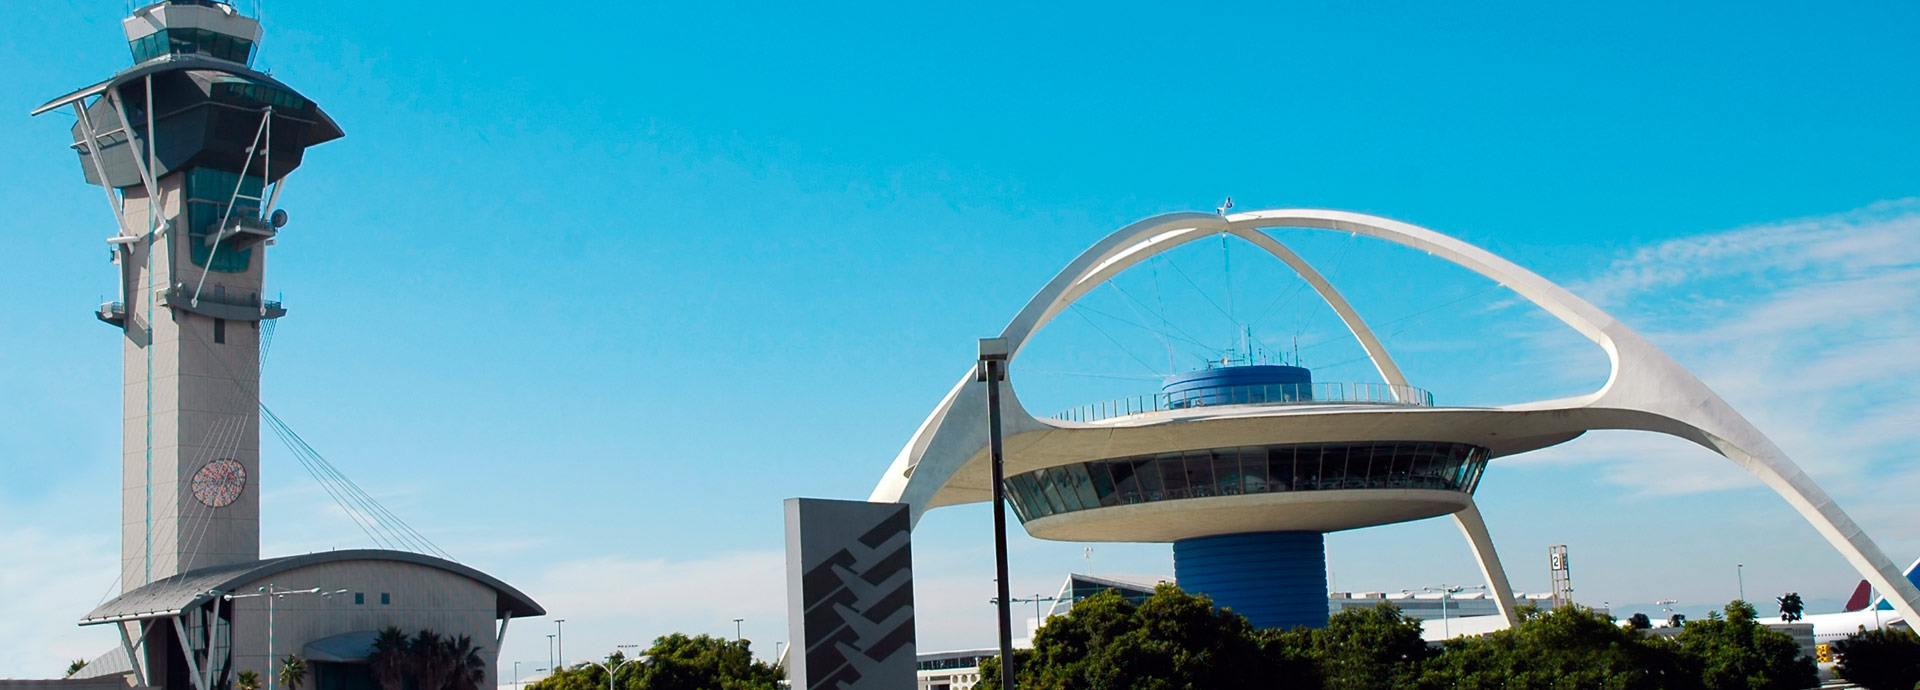 Alquiler de autos Aeropuerto Los Angeles | RentingCarz Argentina